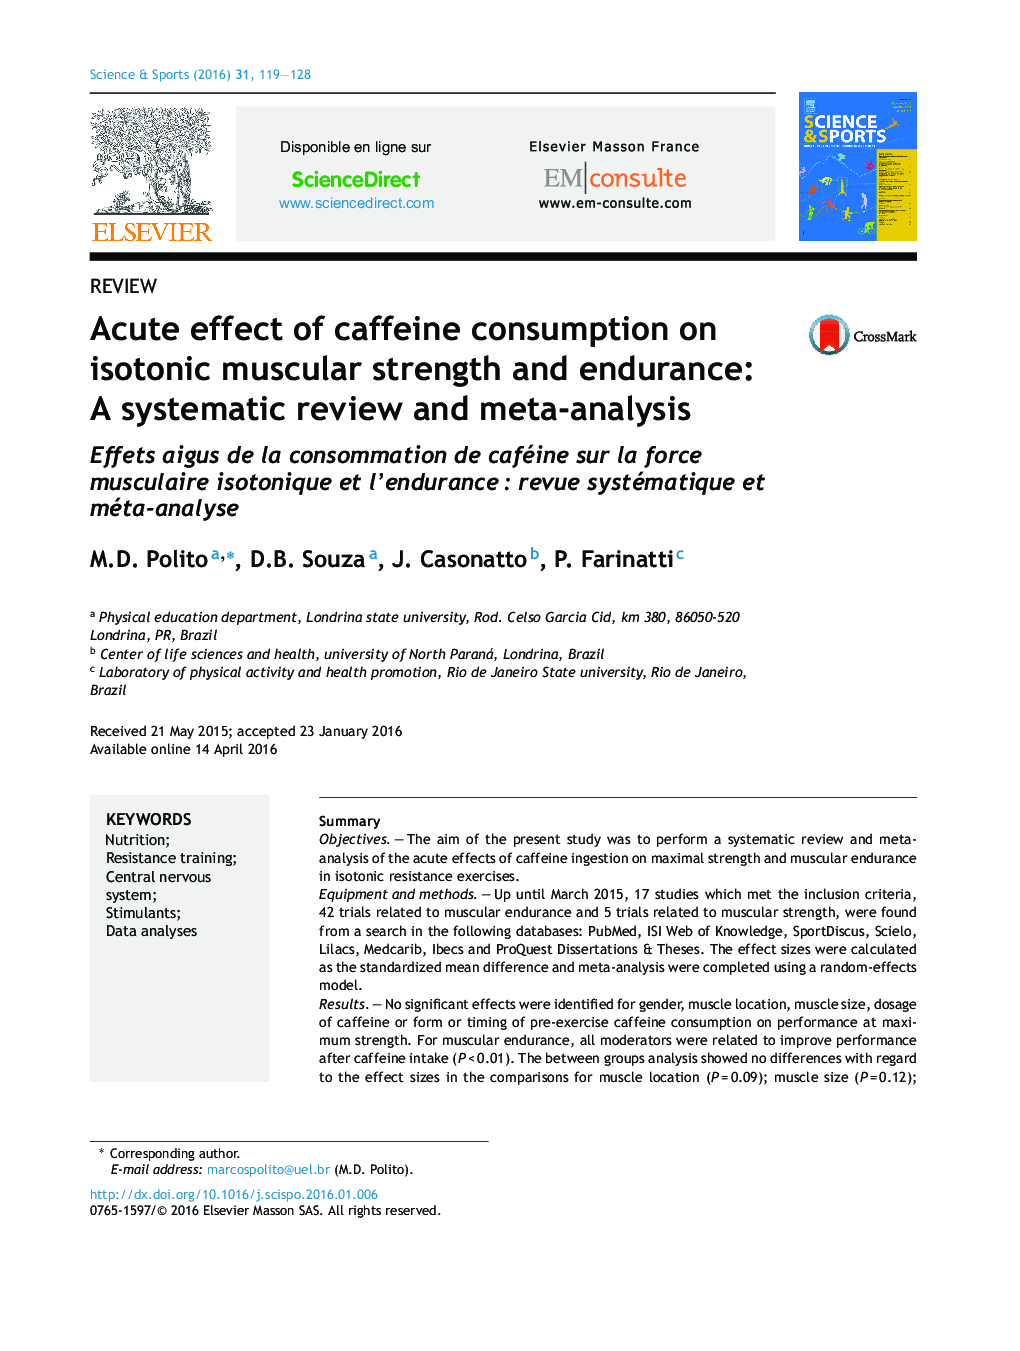 اثر حاد مصرف کافئین بر قدرت و استقامت عضلانی ایزوتونیک: بررسی منظم و متاآنالیز 